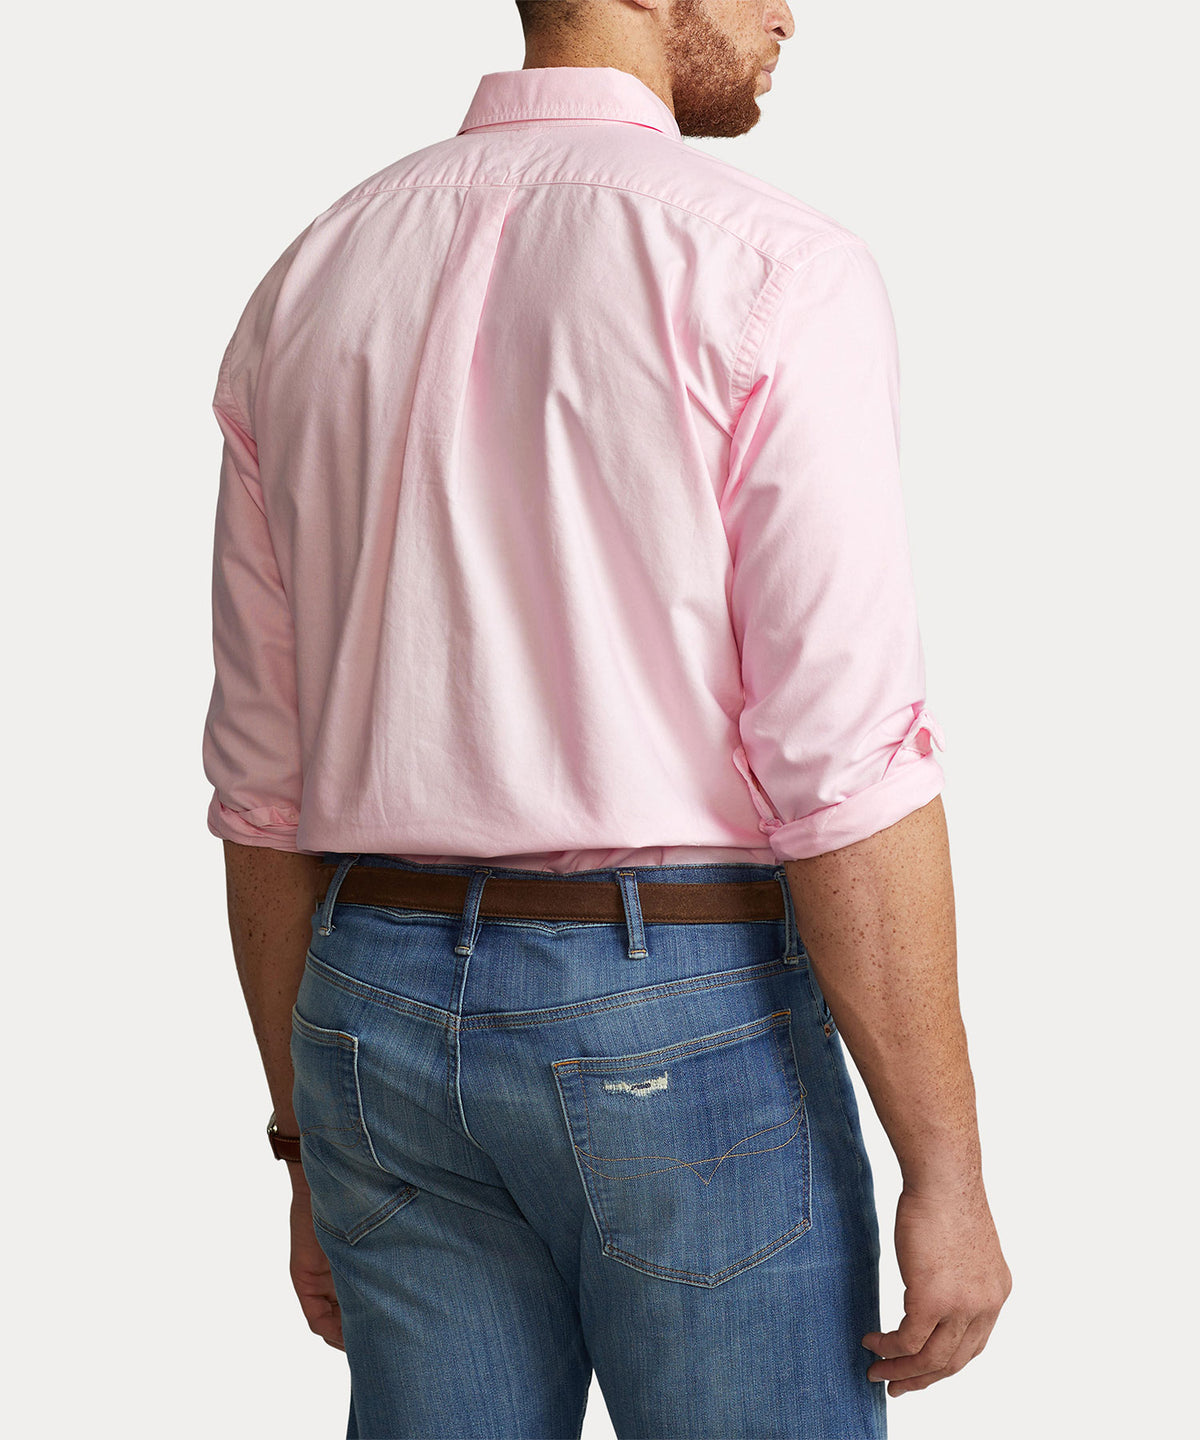 Polo Ralph Lauren Long Sleeve Garment Dyed Oxford Sport Shirt